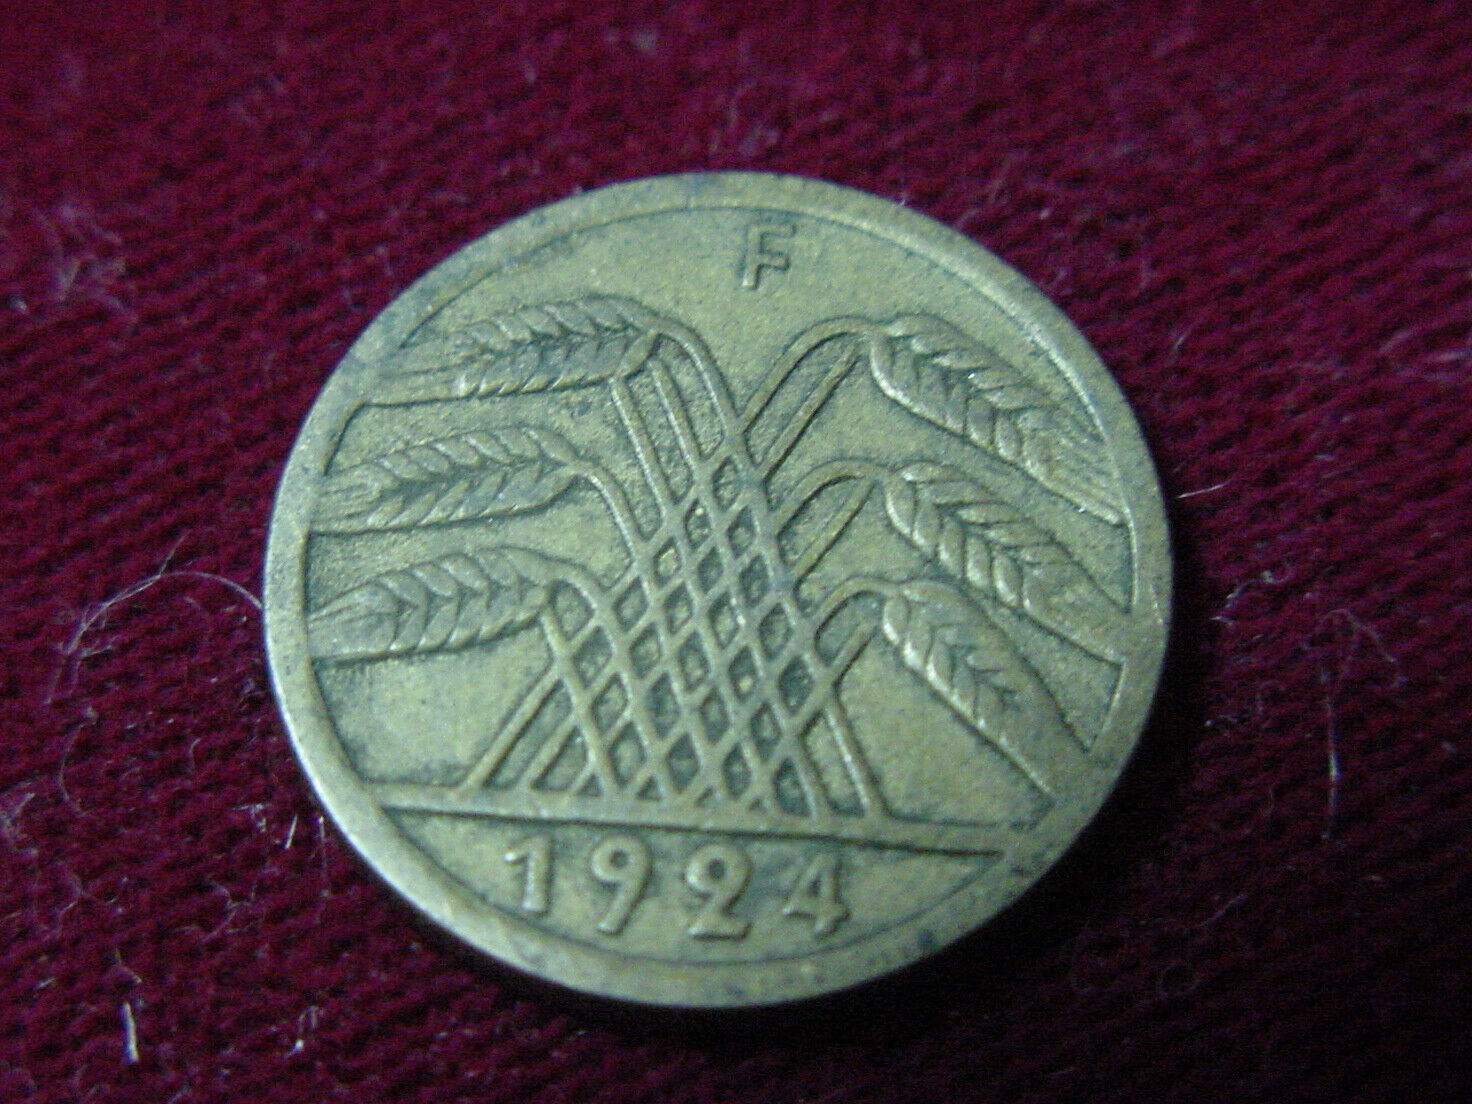 GERMANY DEUTSCHES REICH 1924 F 50 PFENNIG COIN